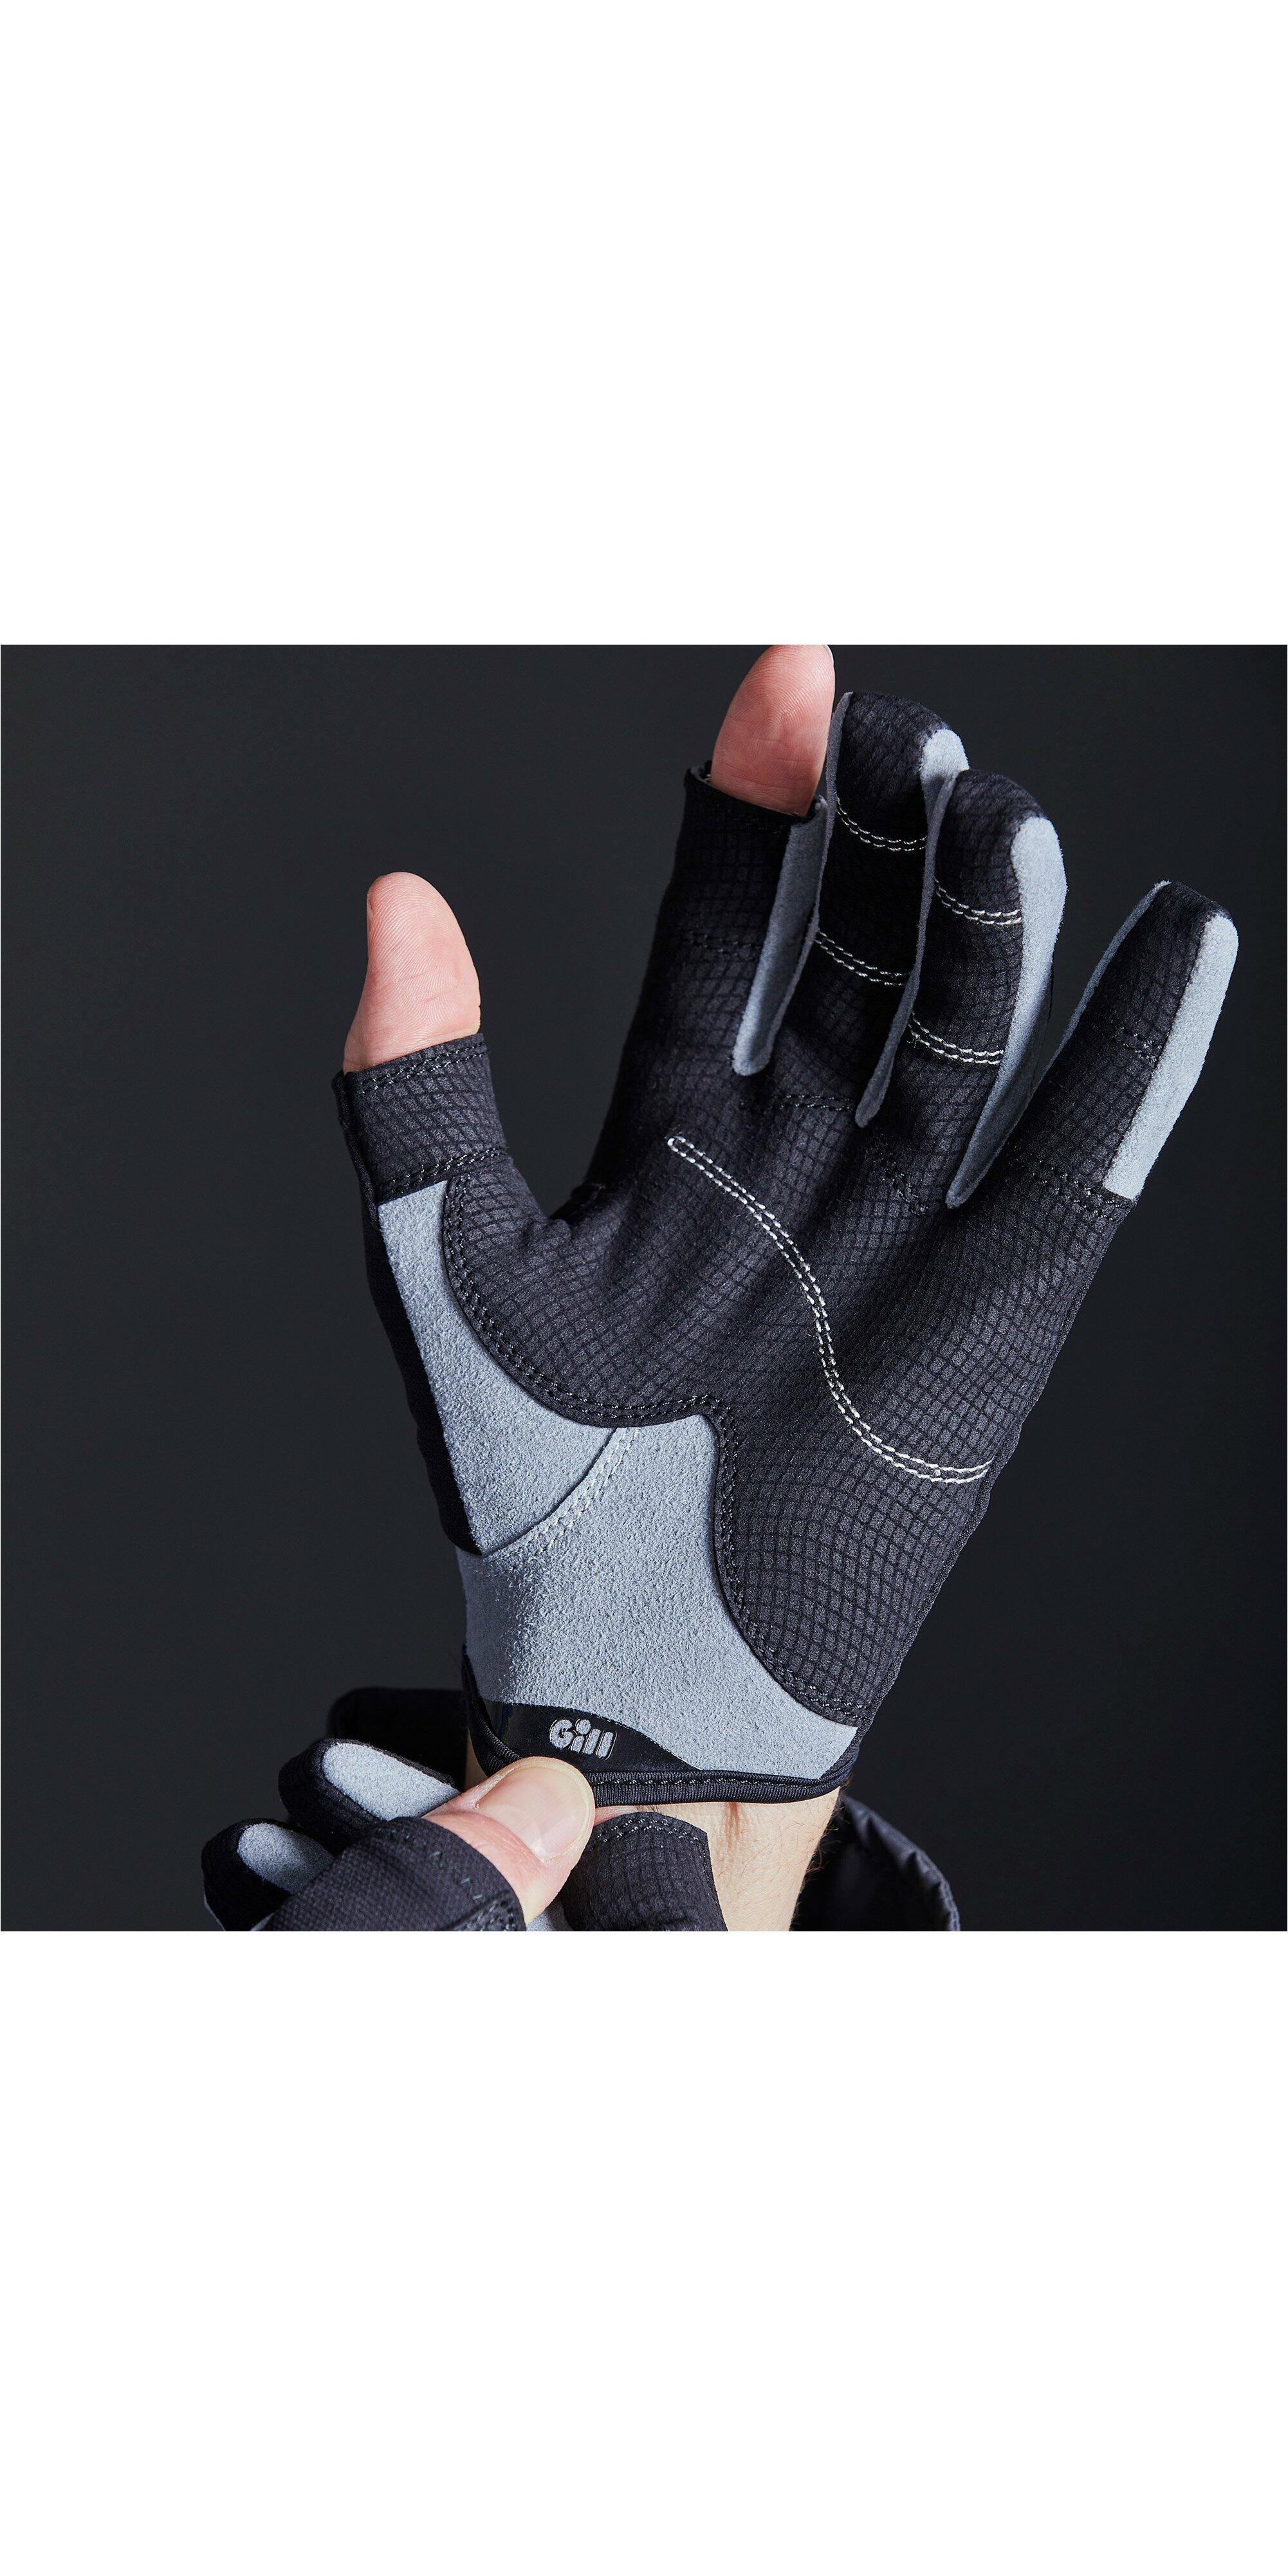 Gill Deckhand Gloves (Long Finger) 7/7